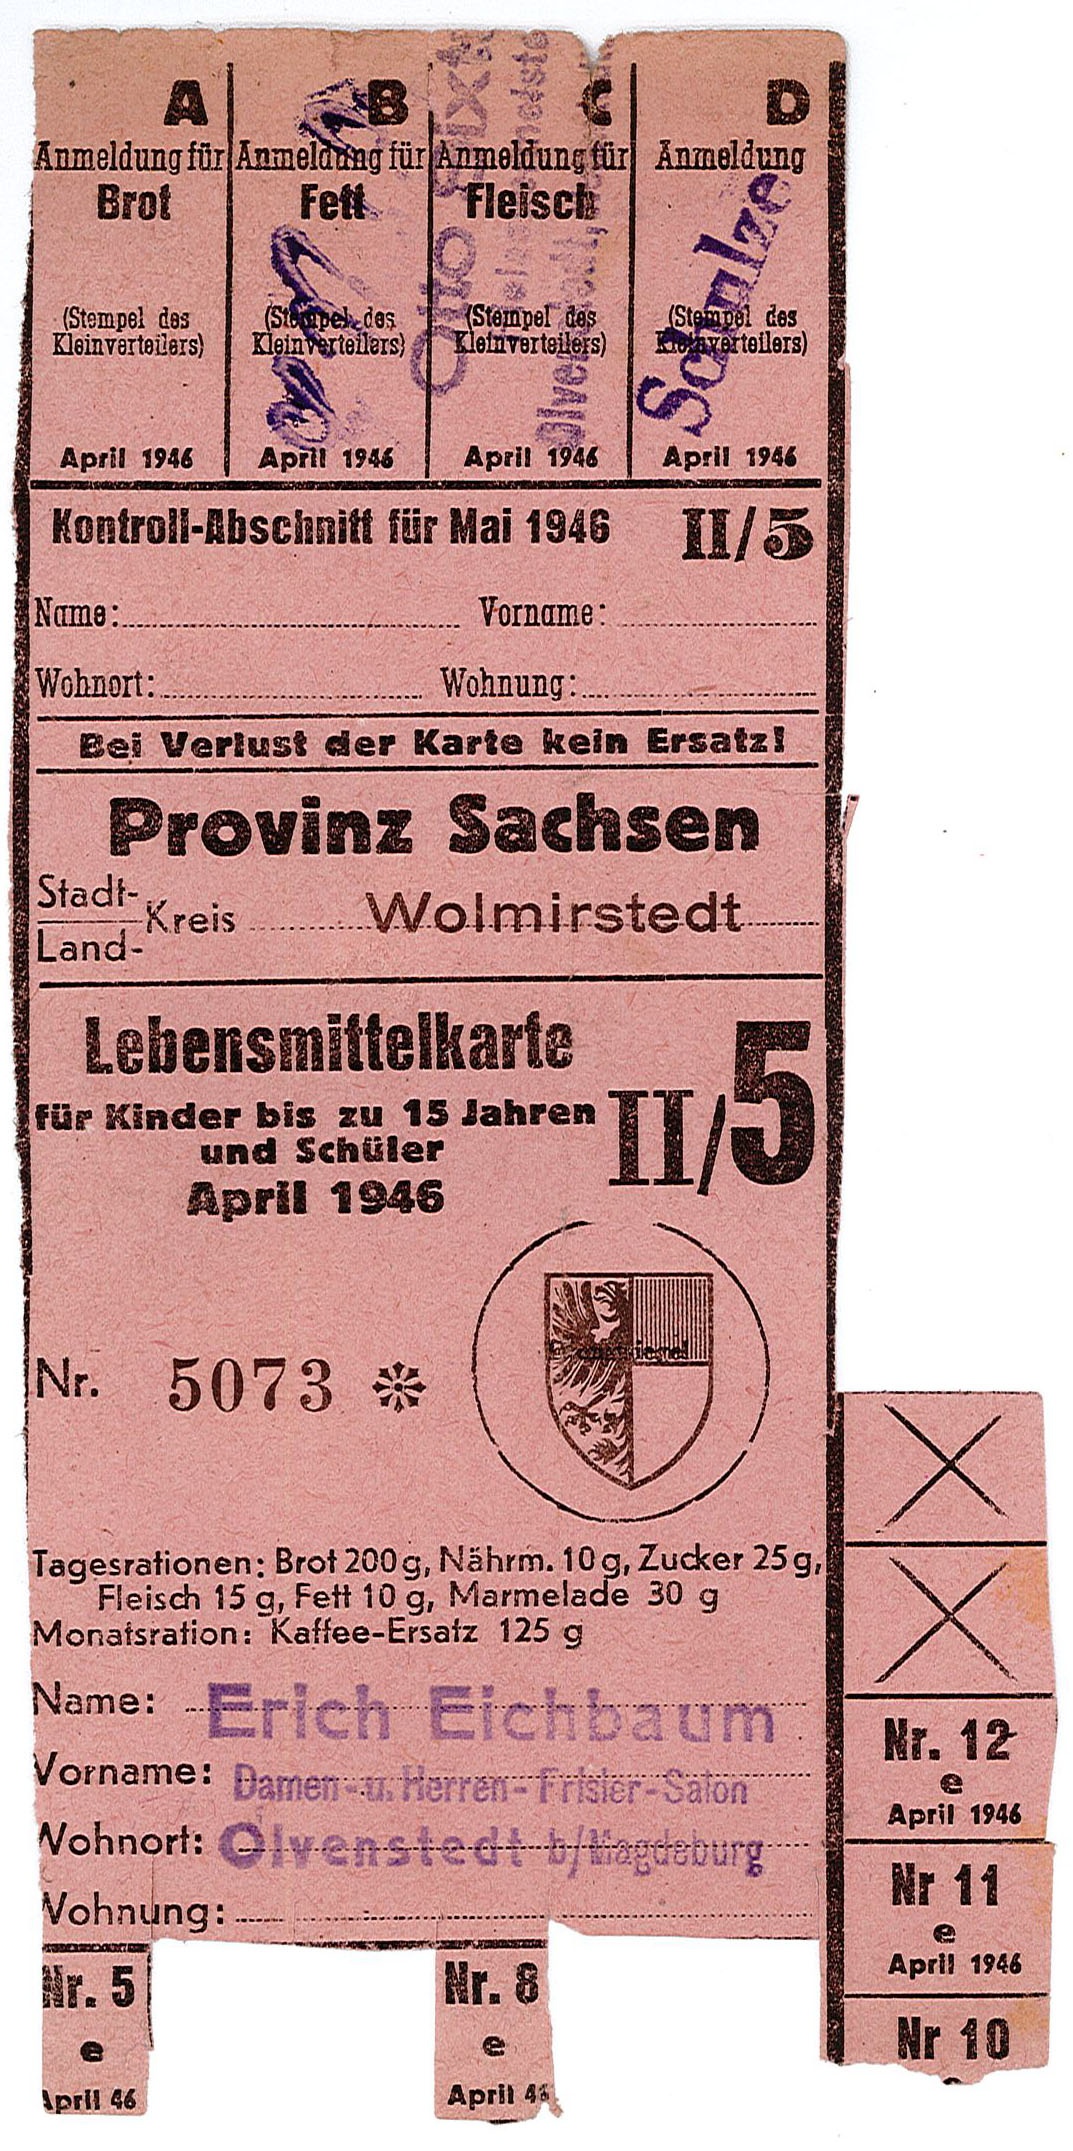 Lebensmittelkarte: für Kinder bis zu 15 Jahren und Schüler, April 1946 (Museum Wolmirstedt RR-F)